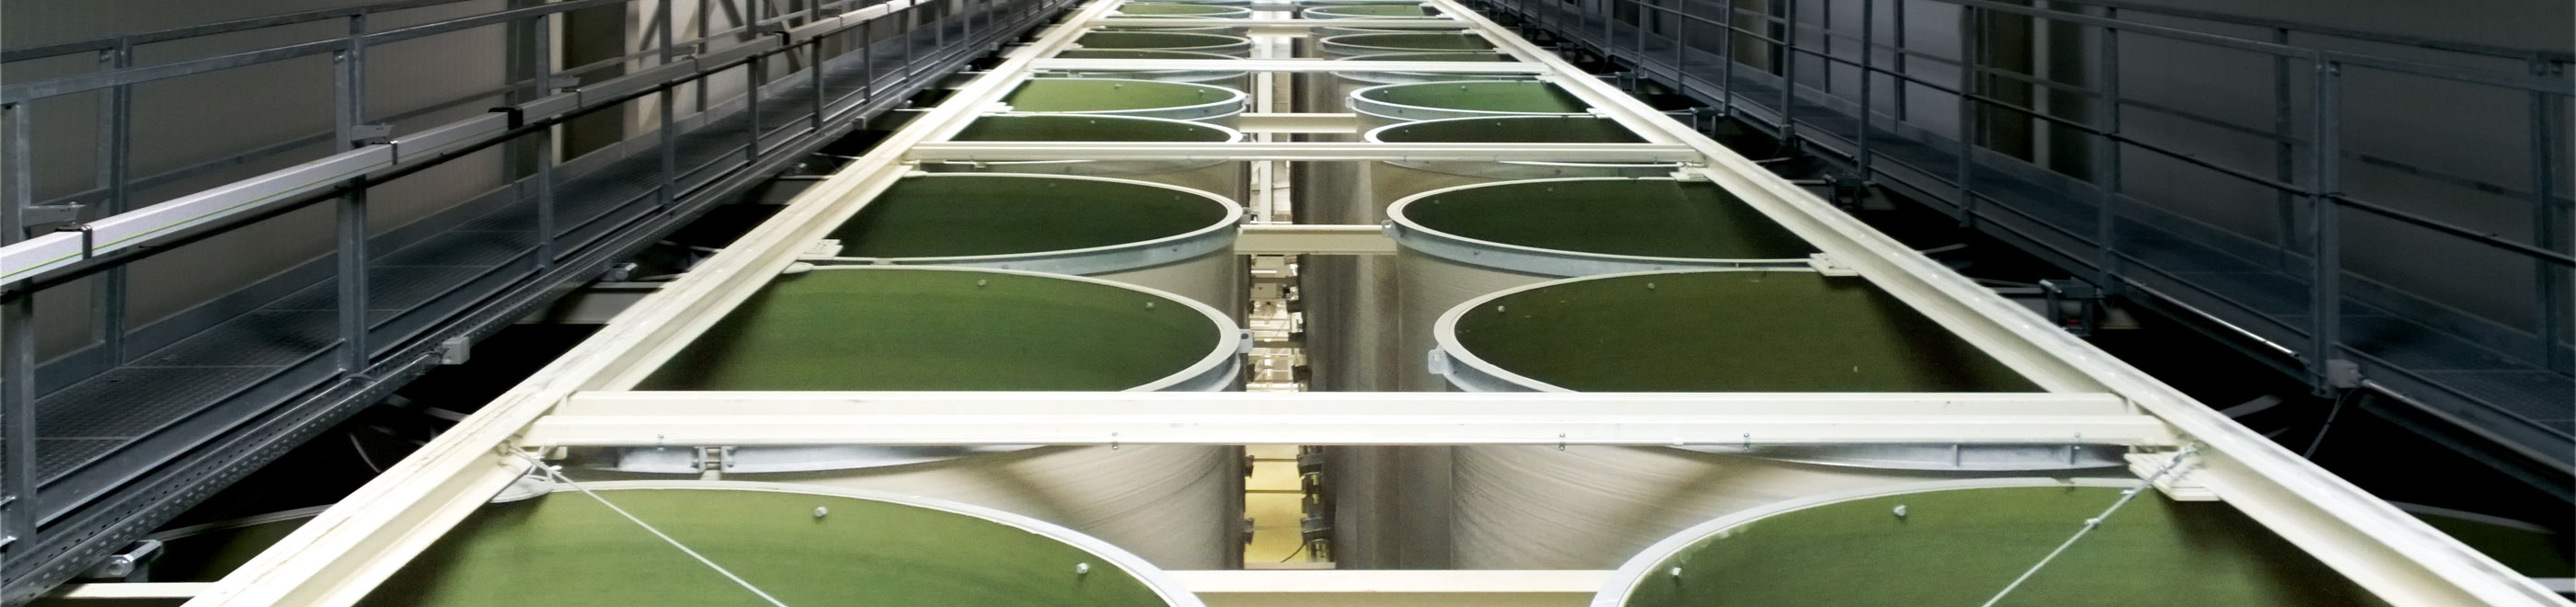 Plusieurs silos verts d'un système de silos en ligne d'en haut avec des passerelles latérales.